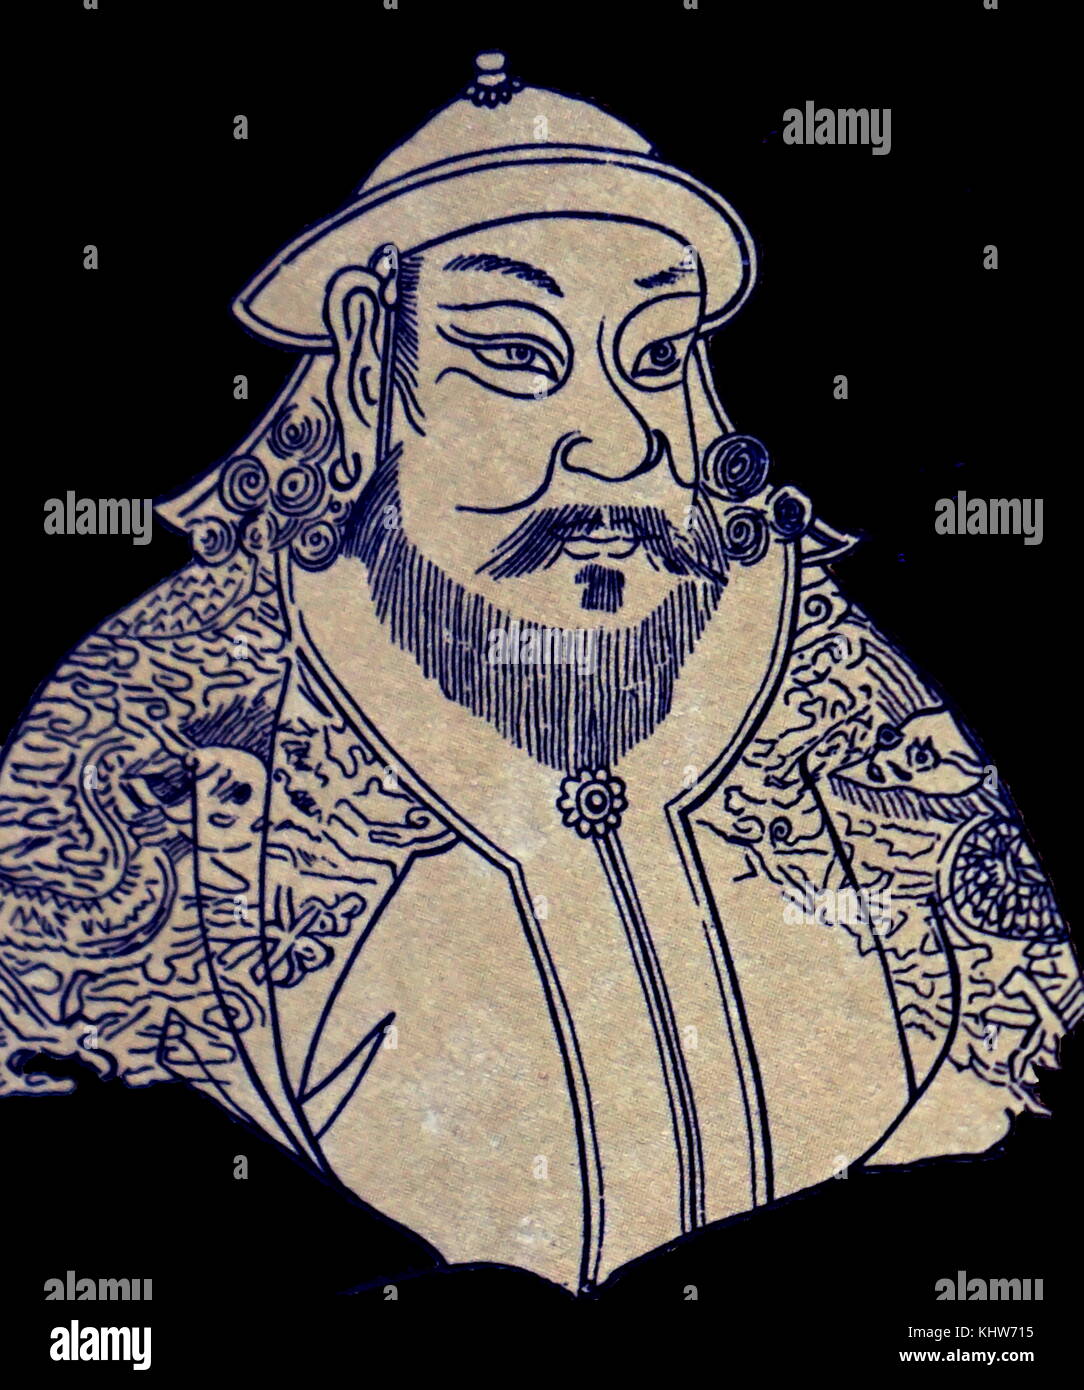 Ritratto di Kublai Khan (1215-1294) il quinto Khagan dell'Impero Mongolo. Egli fondò la dinastia Yuan in Cina come una conquista dinastia, e governate come il primo imperatore Yuan. Datata xiii secolo Foto Stock